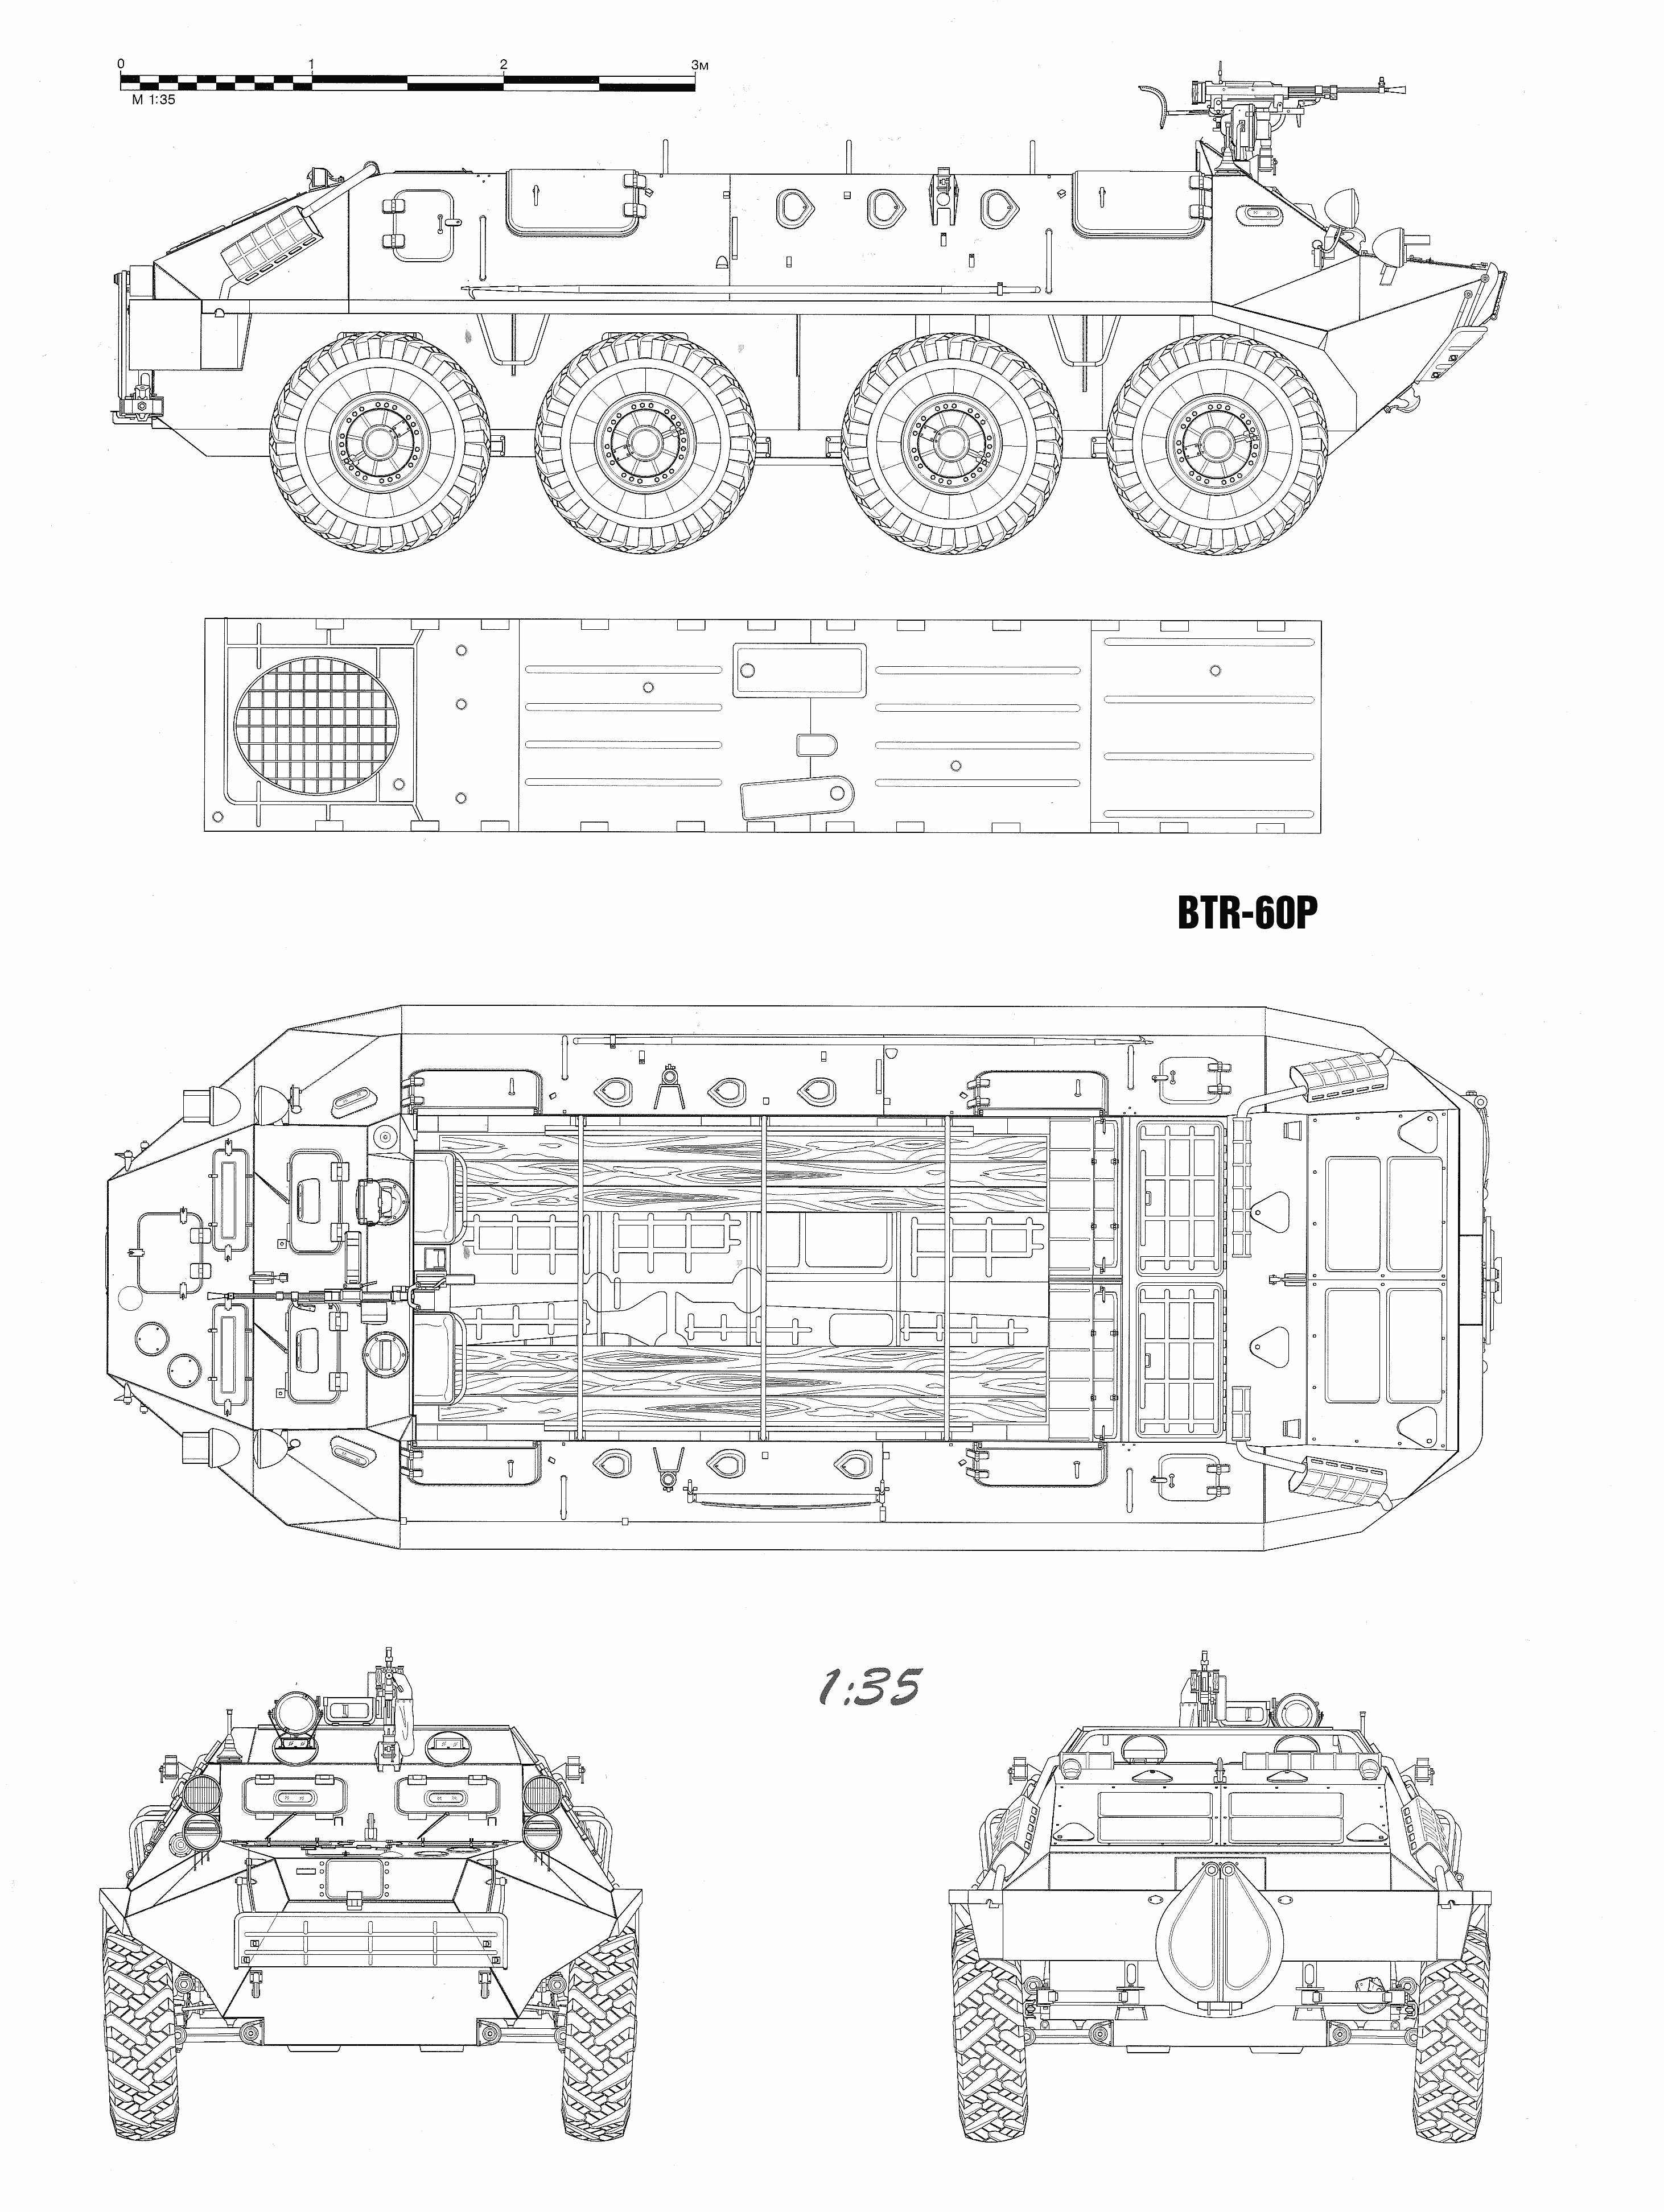 BTR-60P blueprint